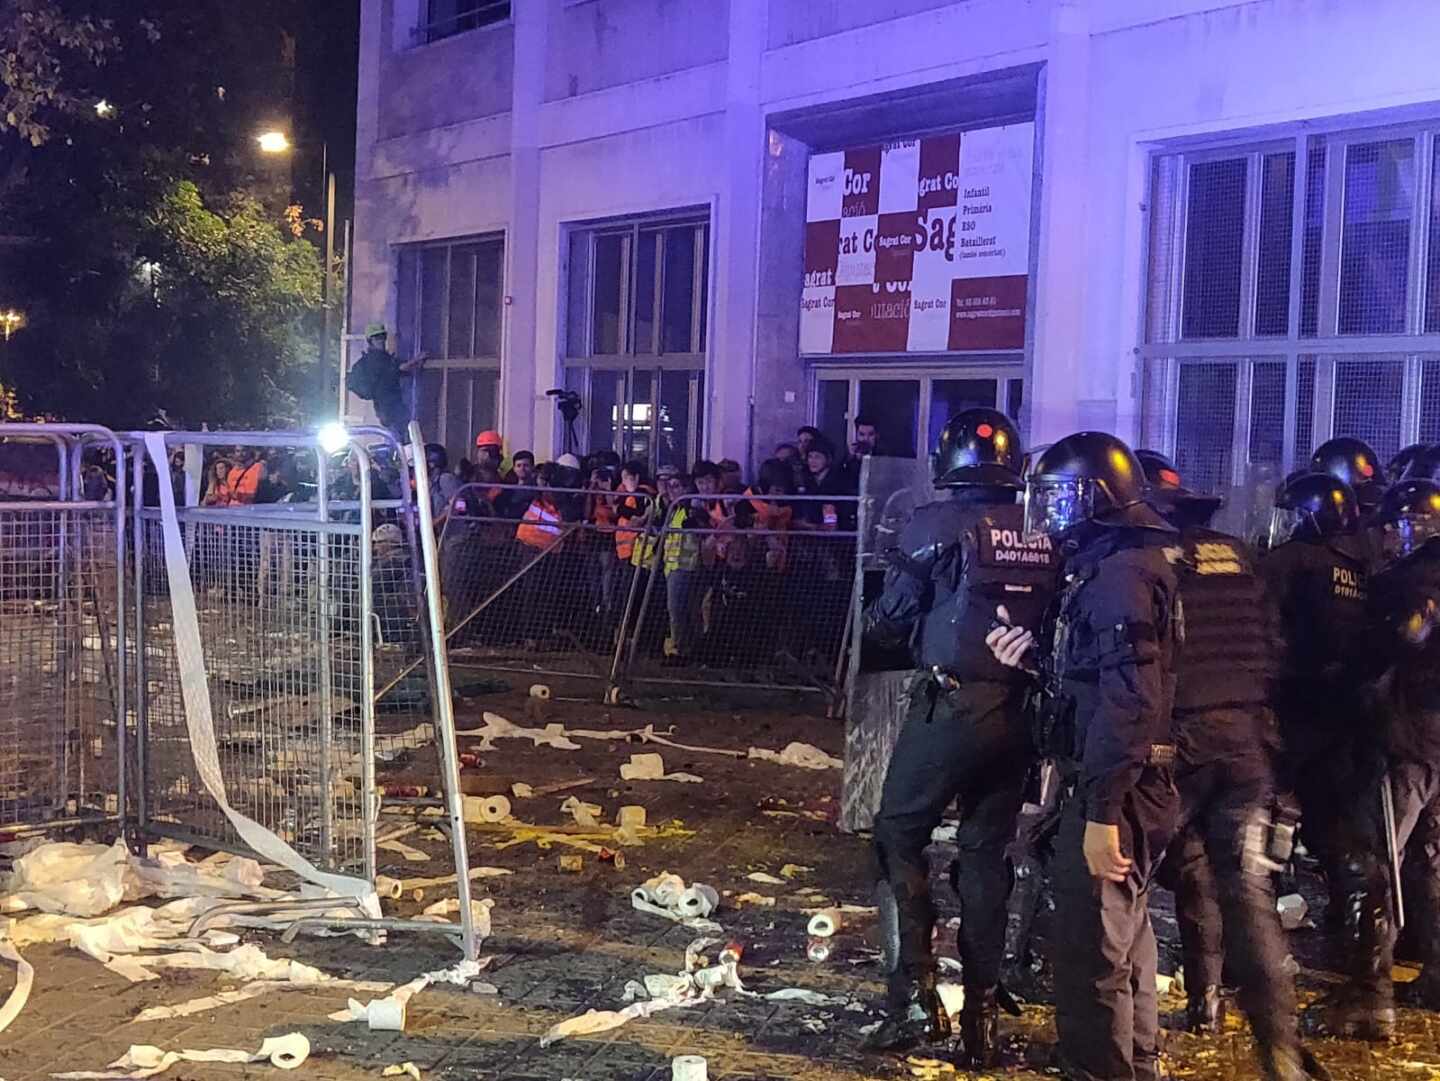 Lanzamiento de ácido y cócteles molotov contra los agentes en Barcelona